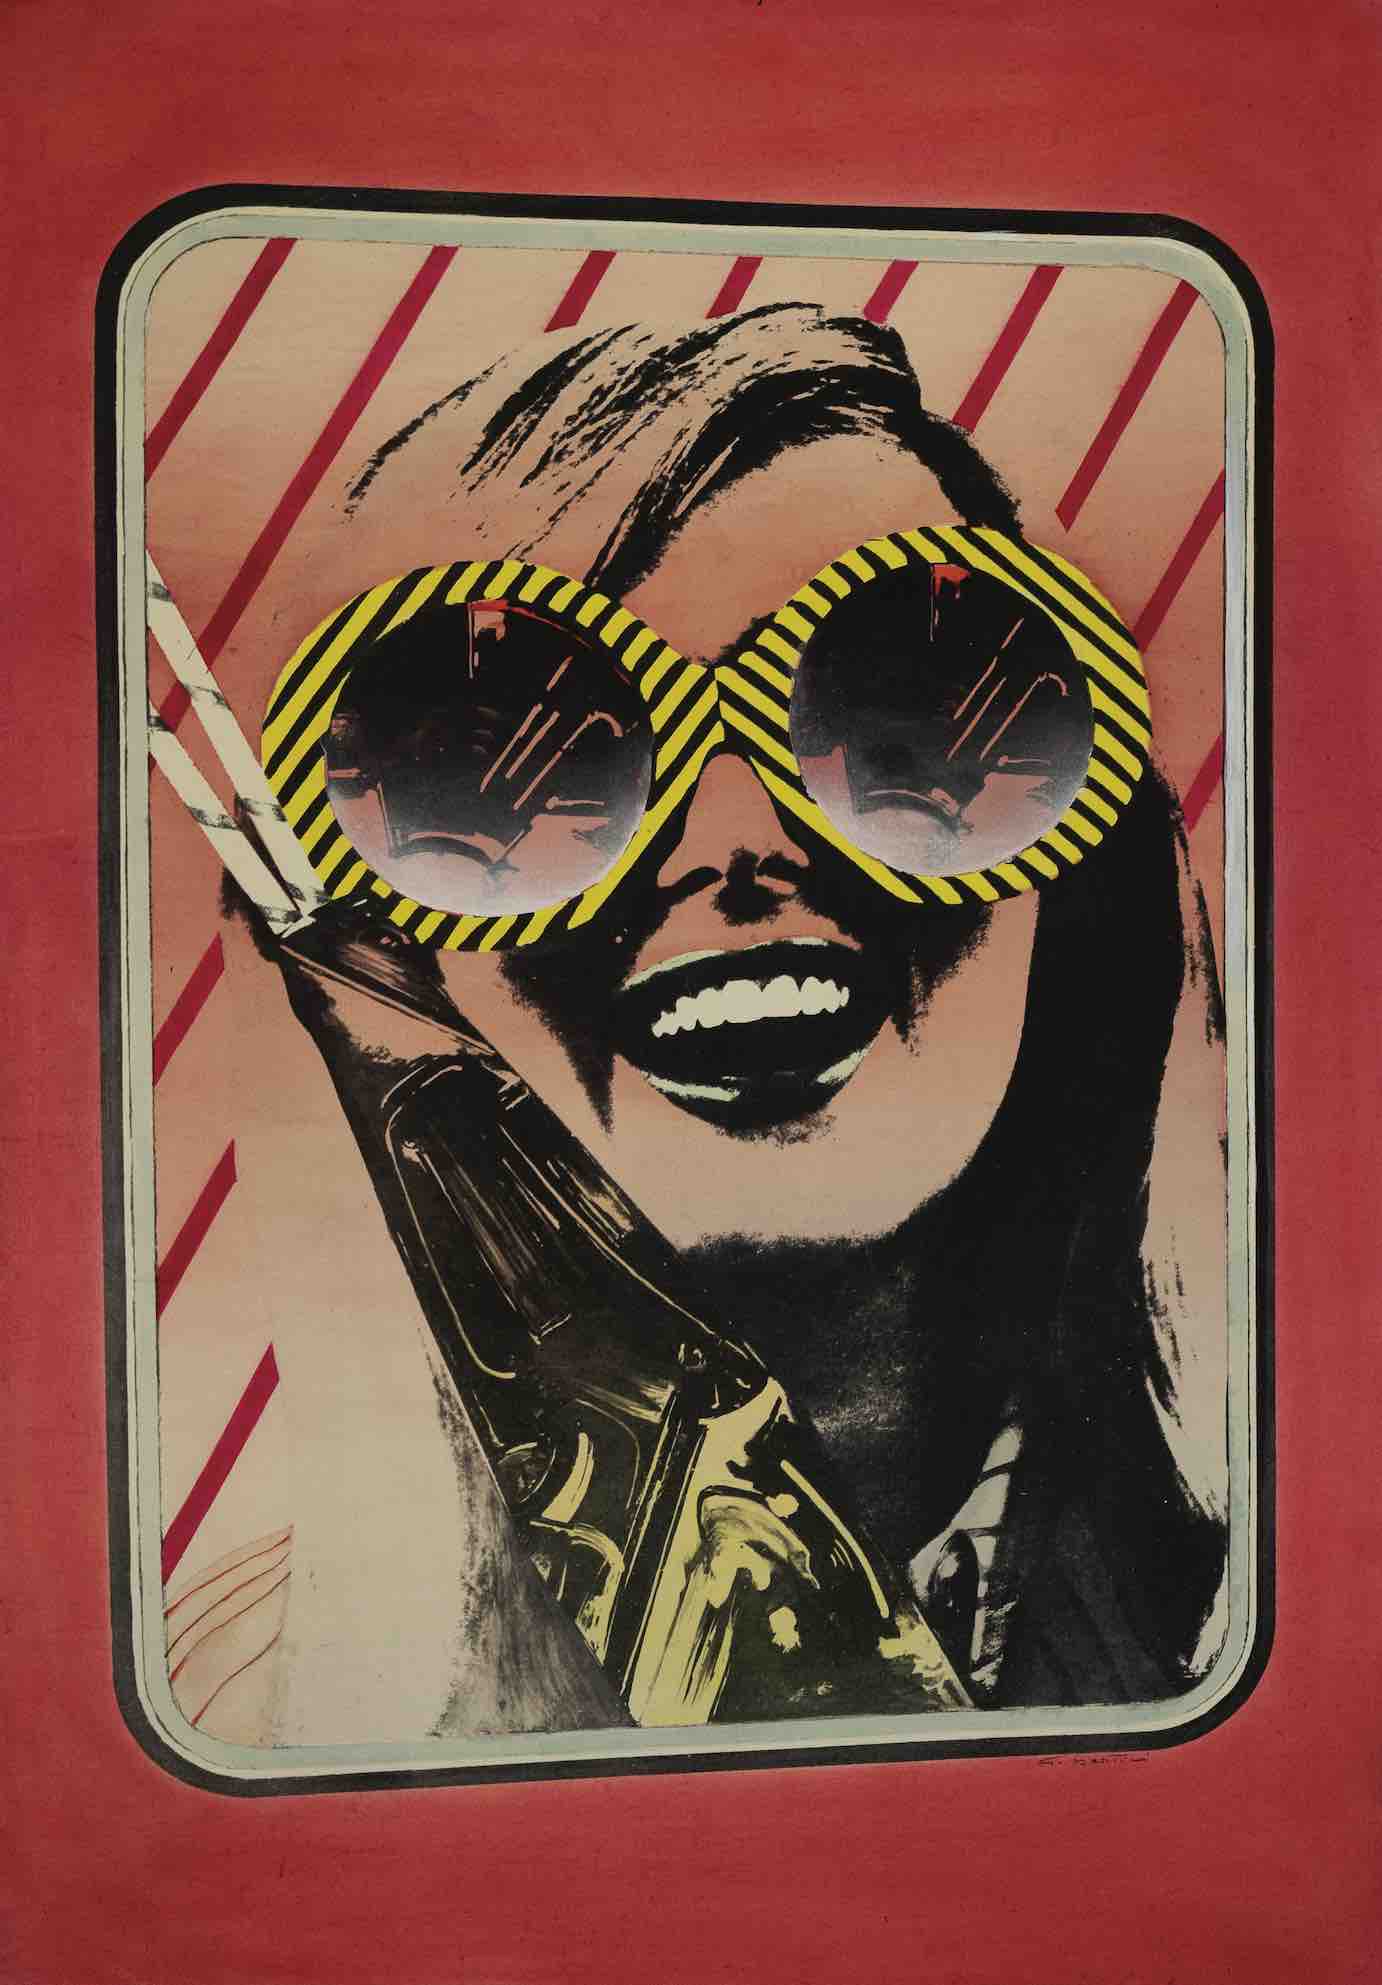 03. Gianni Bertini, La chiamerò bambola, 1969, riporto fotografico su tela emulsionata e anilina, 115x81 cm